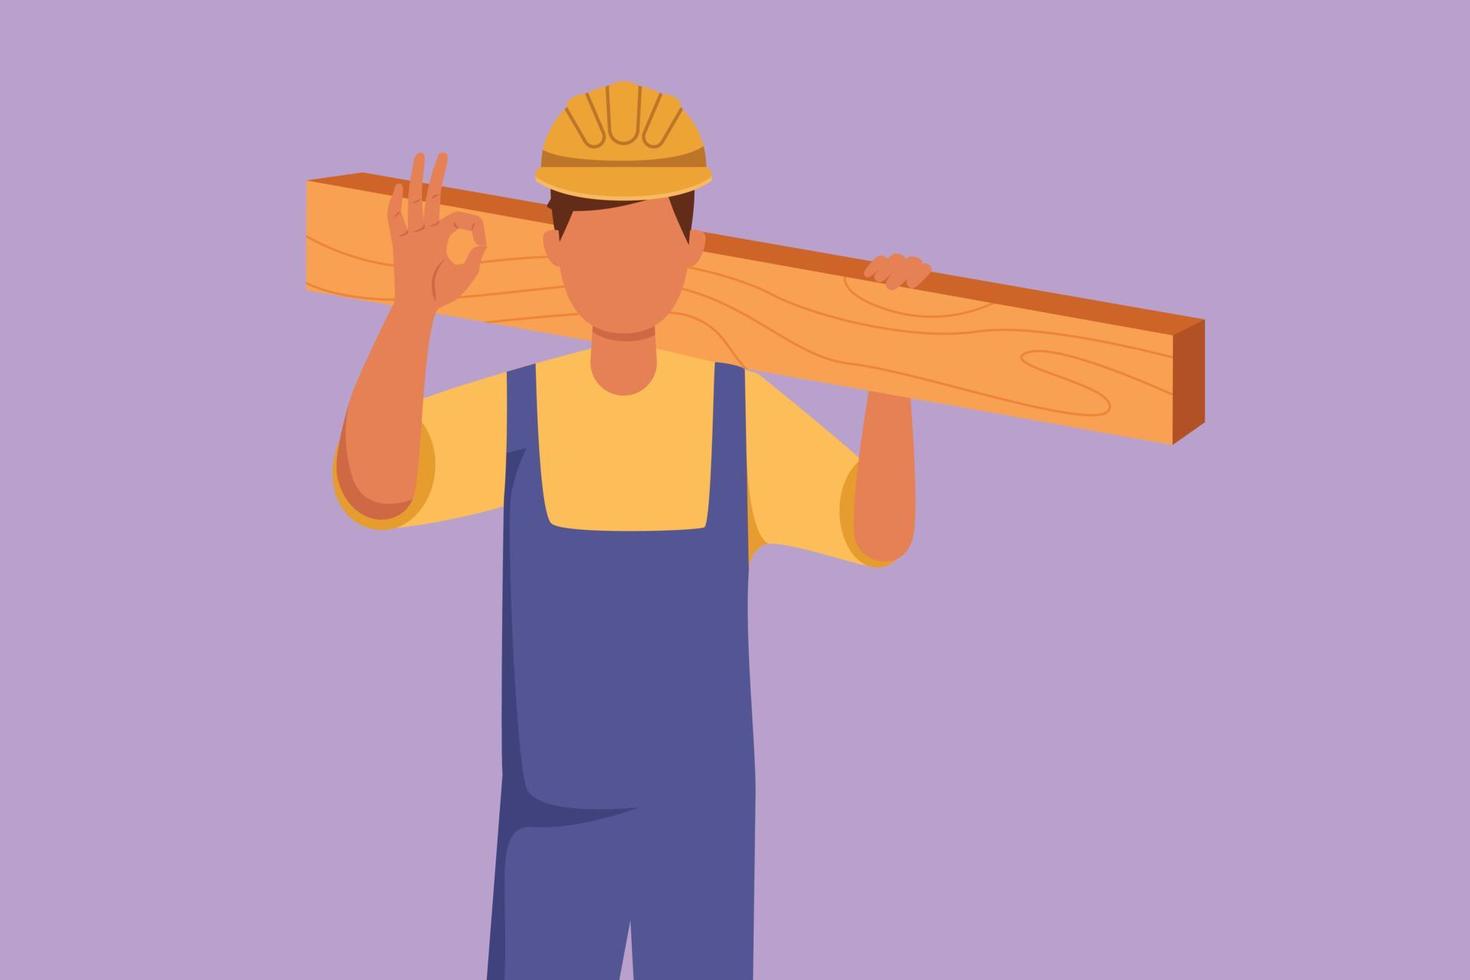 Cartoon Flat Style Drawing männlicher Zimmermann, der Holzbrett mit okaygeste trägt und in seiner Werkstatt arbeitet, um Holzprodukte herzustellen. Fähigkeiten im Umgang mit Tischlerwerkzeugen. Grafikdesign-Vektorillustration vektor